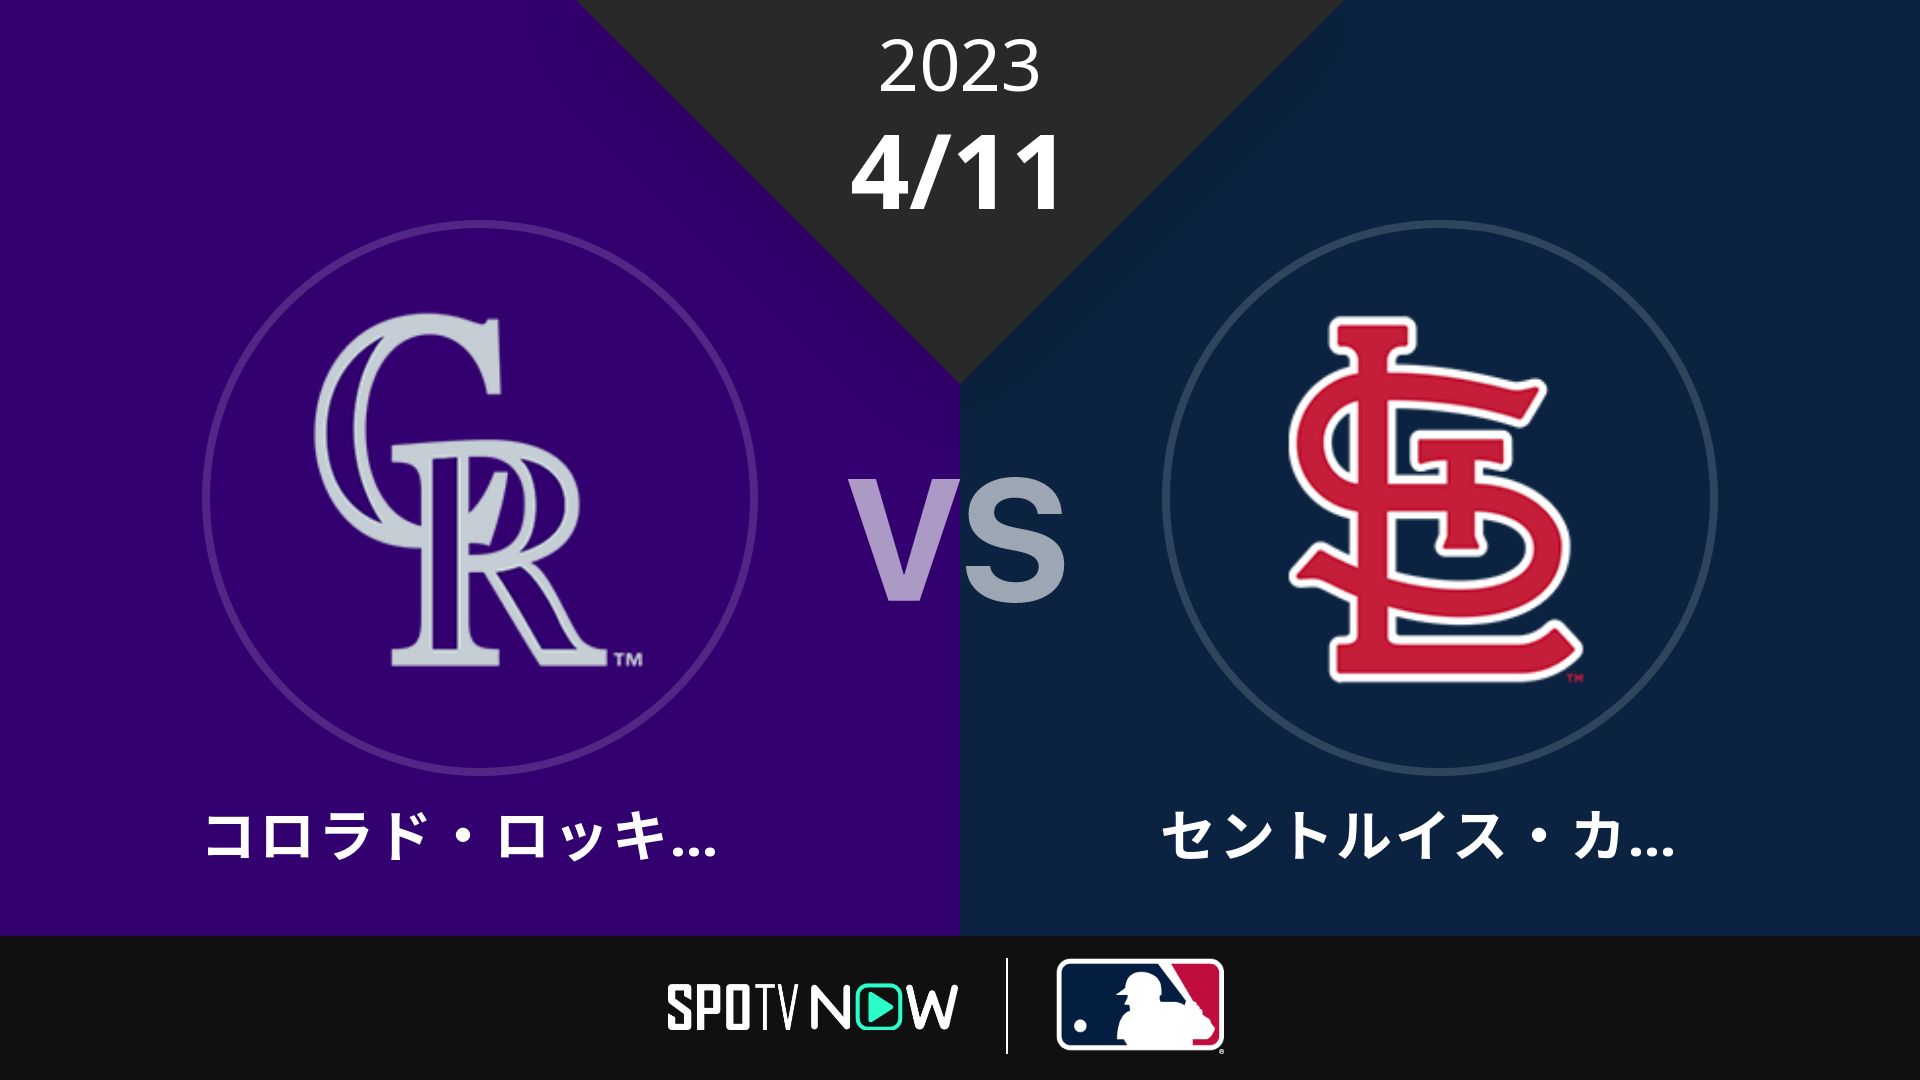 2023/4/11 ロッキーズ vs カージナルス [MLB]